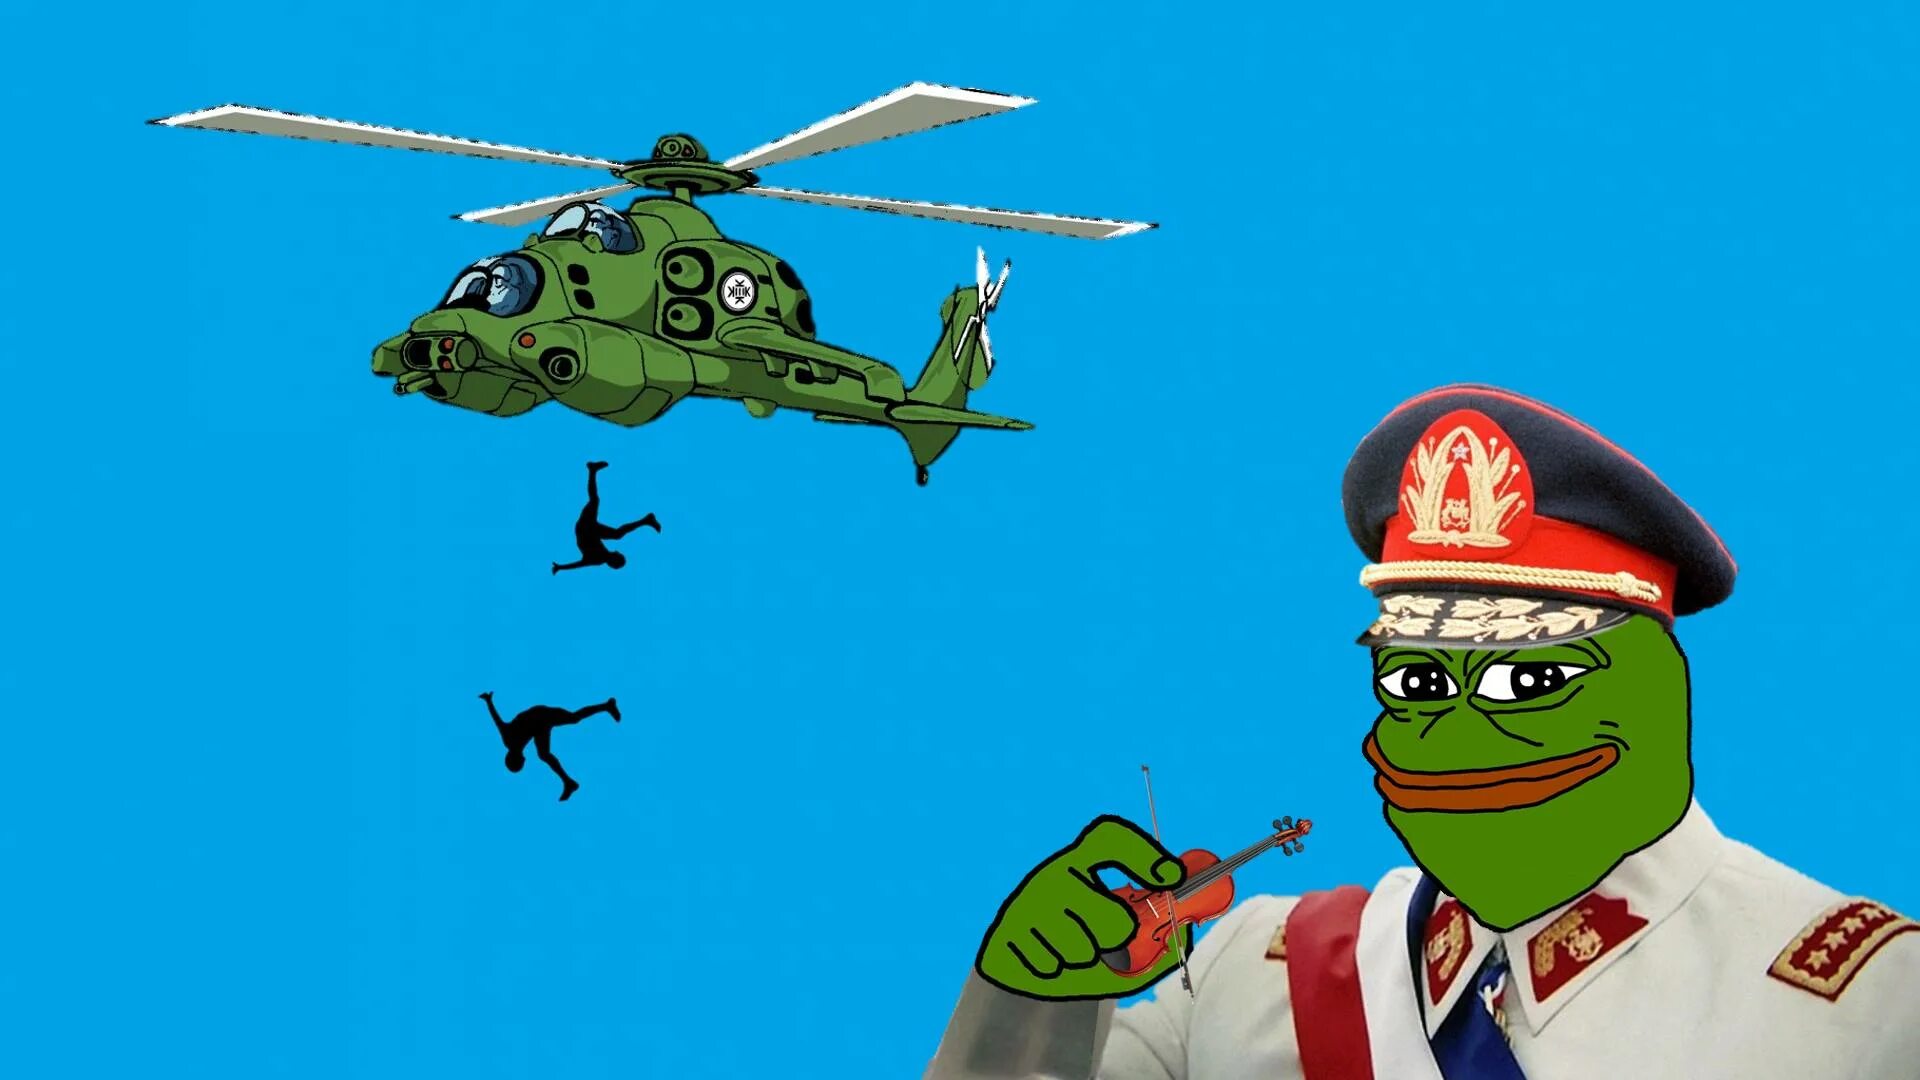 Скинь вертолет. Аугусто Пиночет вертолет. Пиночет Pepe. Генерал Аугусто Пиночет. Пиночет вертолет коммунист.